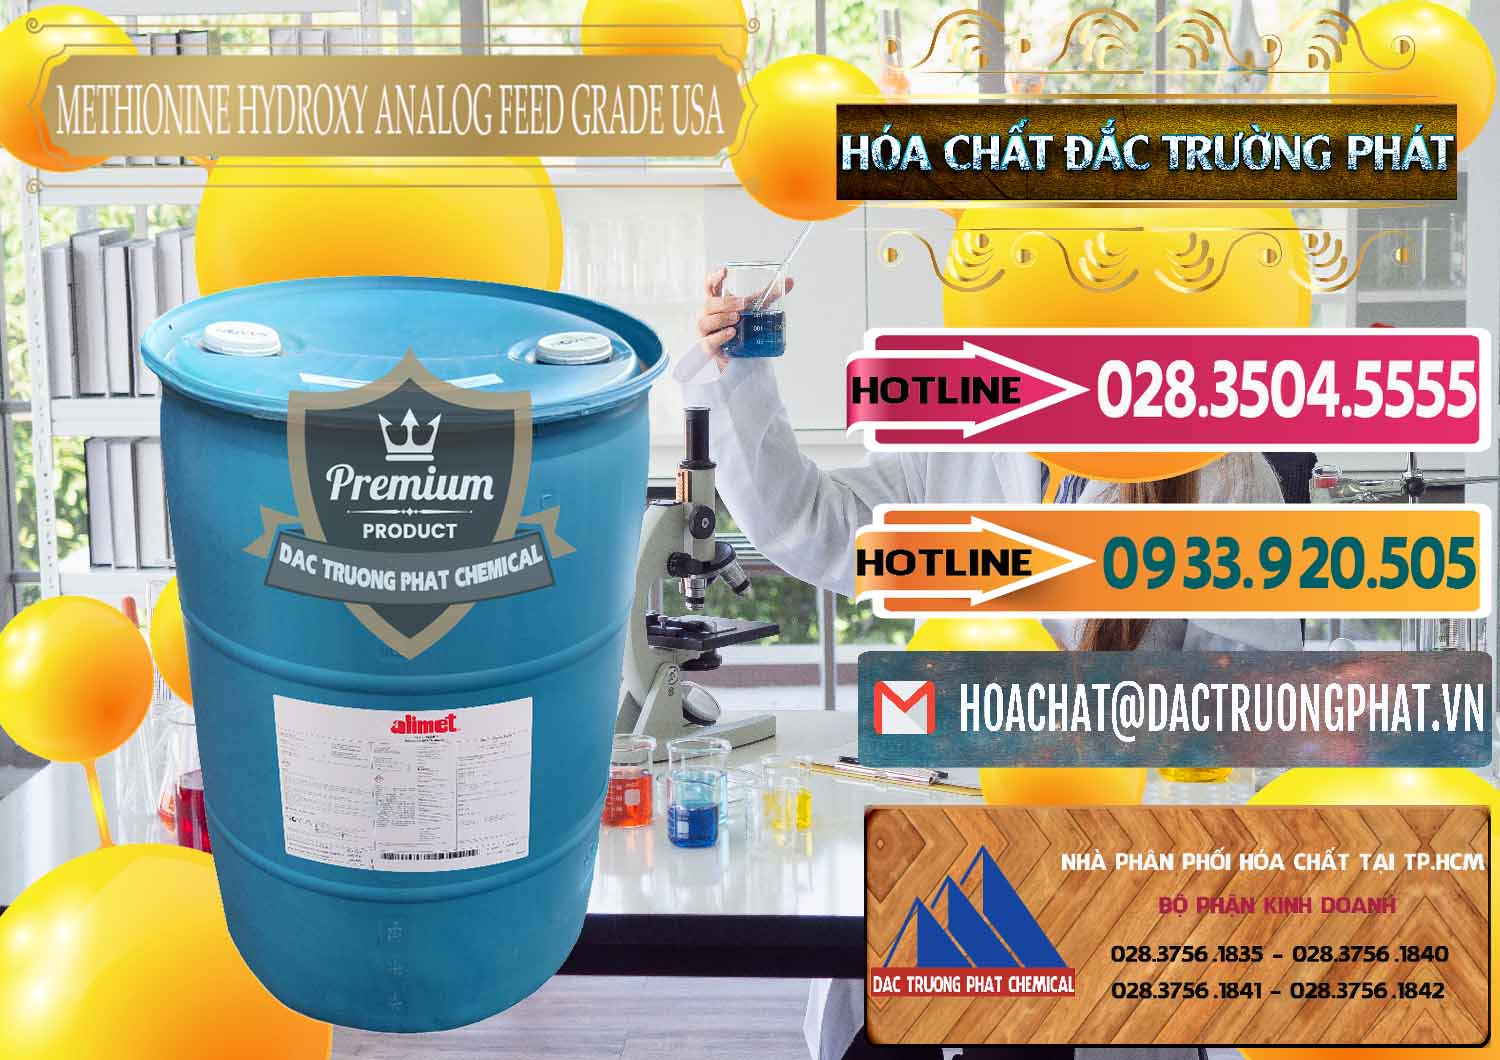 Nhà phân phối và bán Methionine Nước - Dạng Lỏng Novus Alimet Mỹ USA - 0316 - Cty chuyên kinh doanh ( cung cấp ) hóa chất tại TP.HCM - dactruongphat.vn